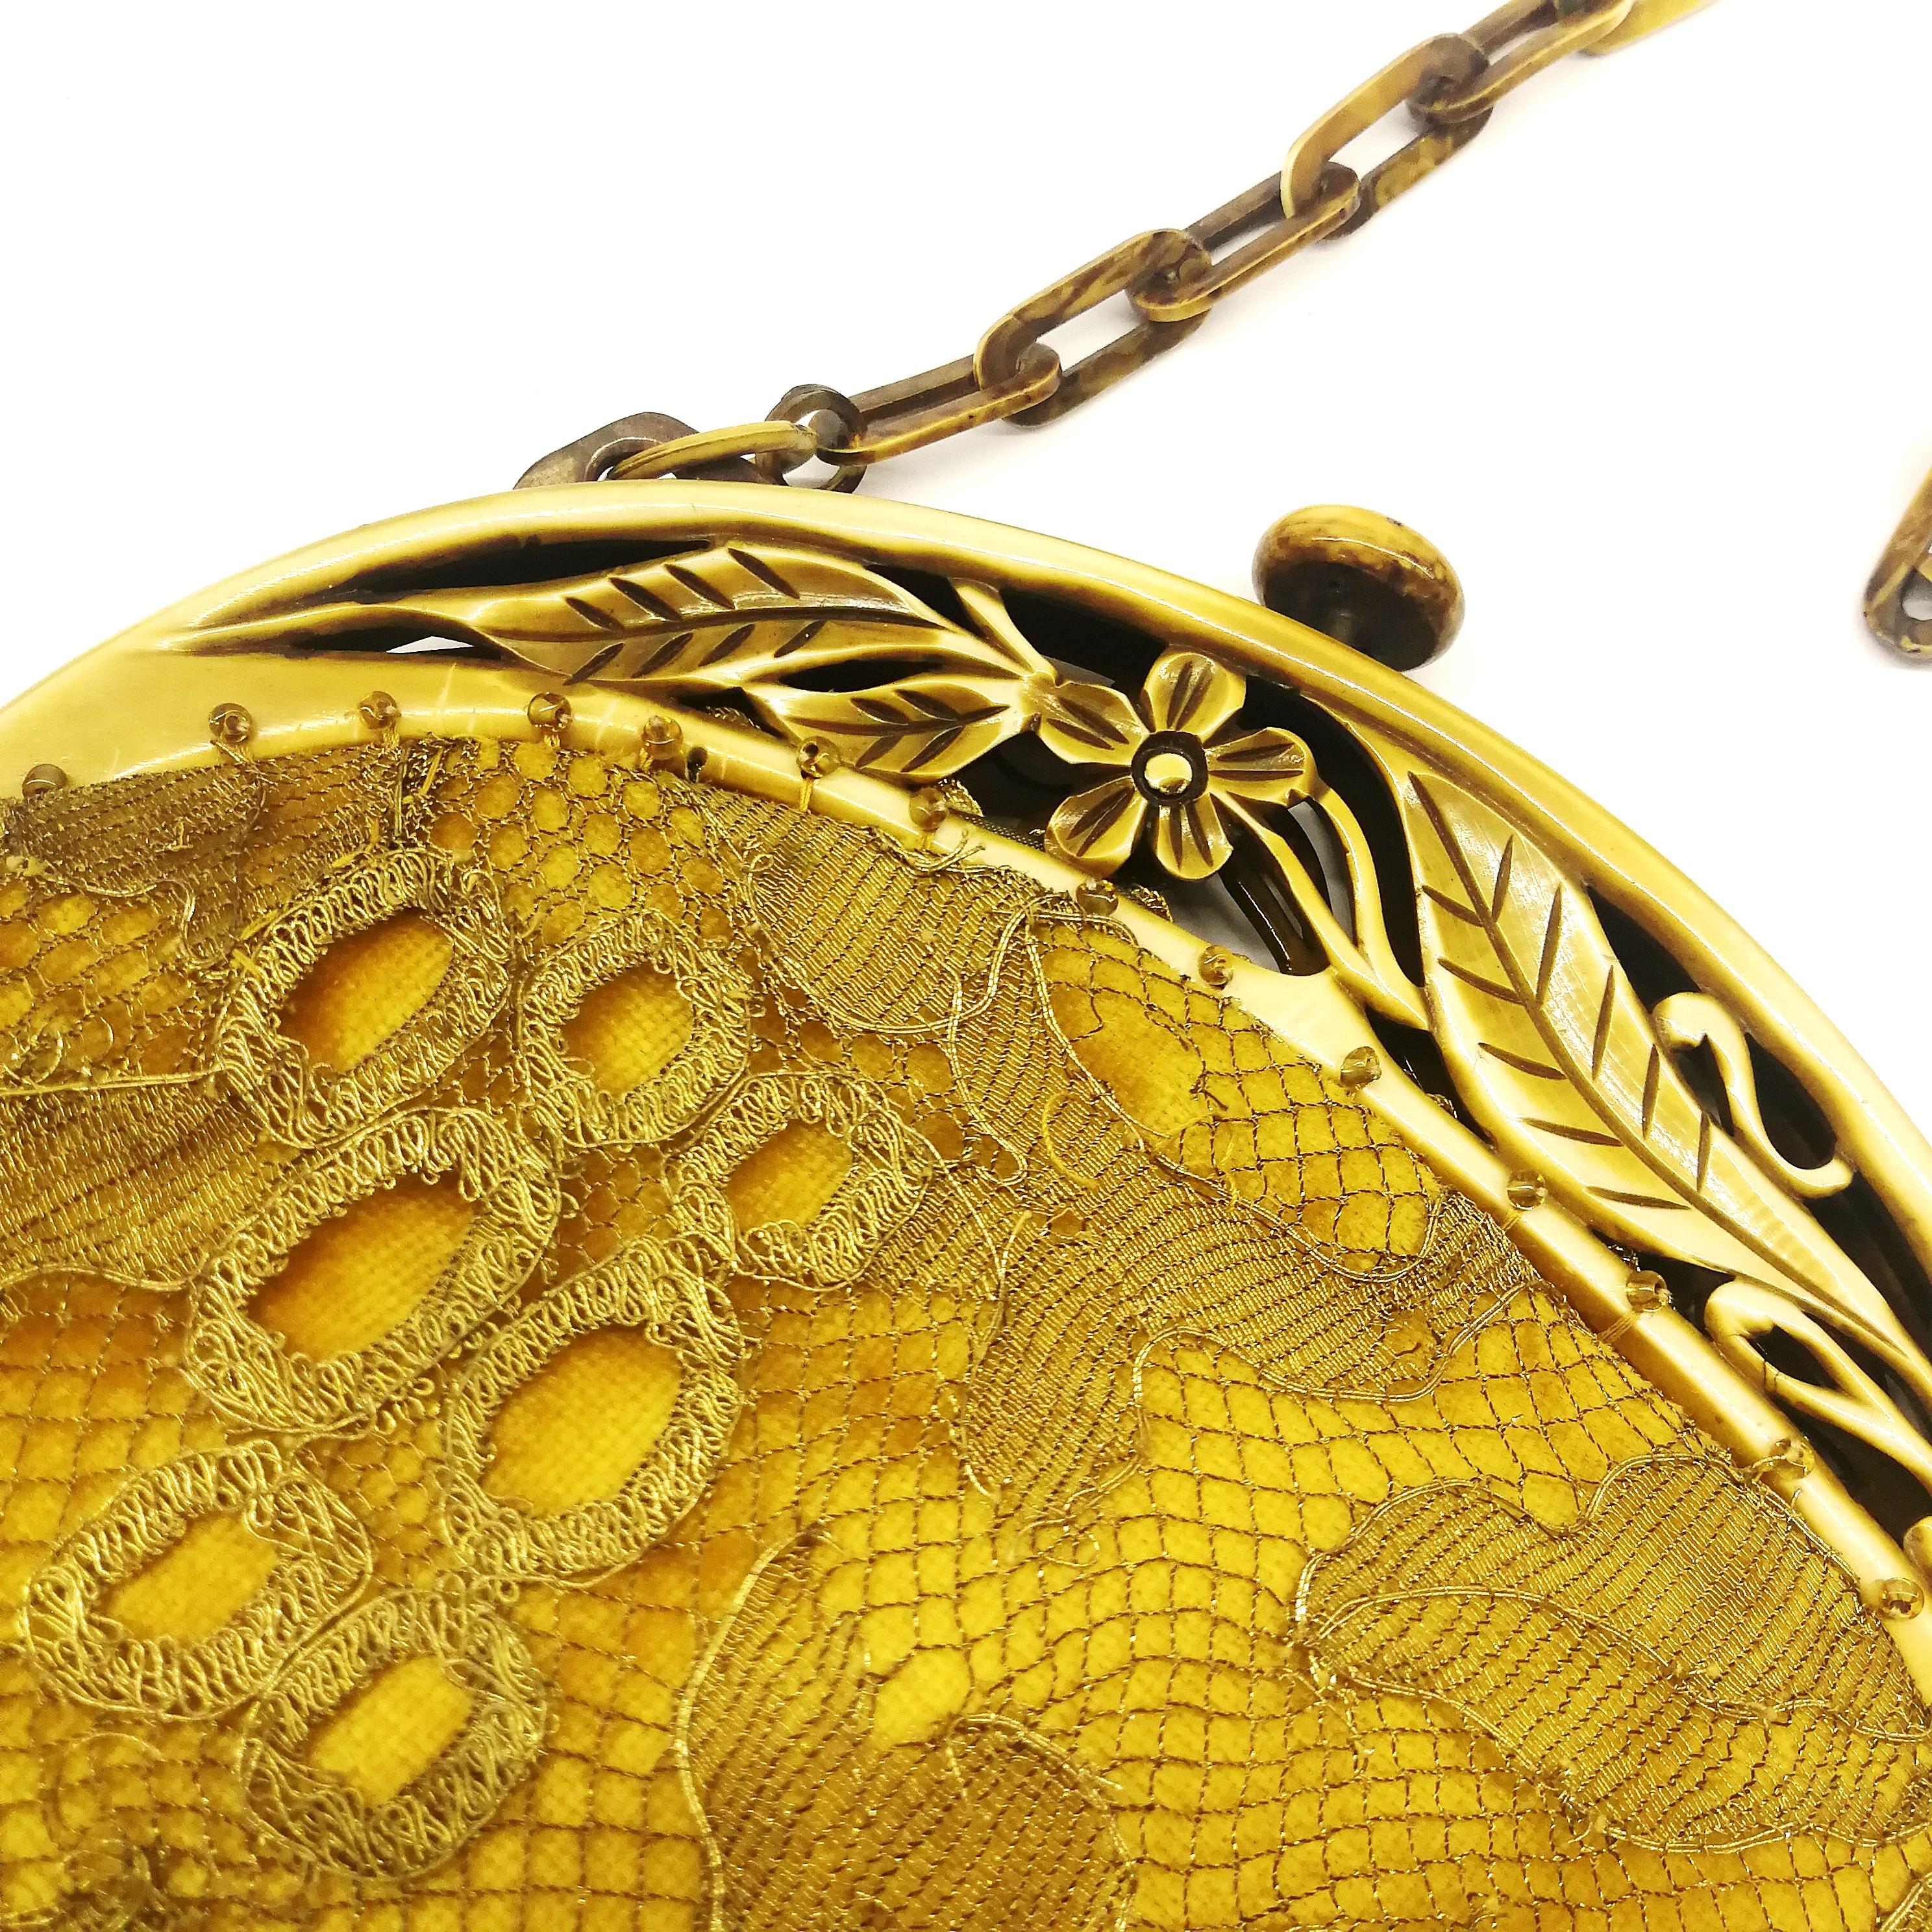 Eine bezaubernde und sehr dekorative Handtasche aus goldener/bernsteinfarbener Seide  Samt, der mit einem Schleier oder einer Netzschicht überzogen ist, was der Handtasche eine besondere Feinheit und Tiefe verleiht. Gekrönt mit einer schönen